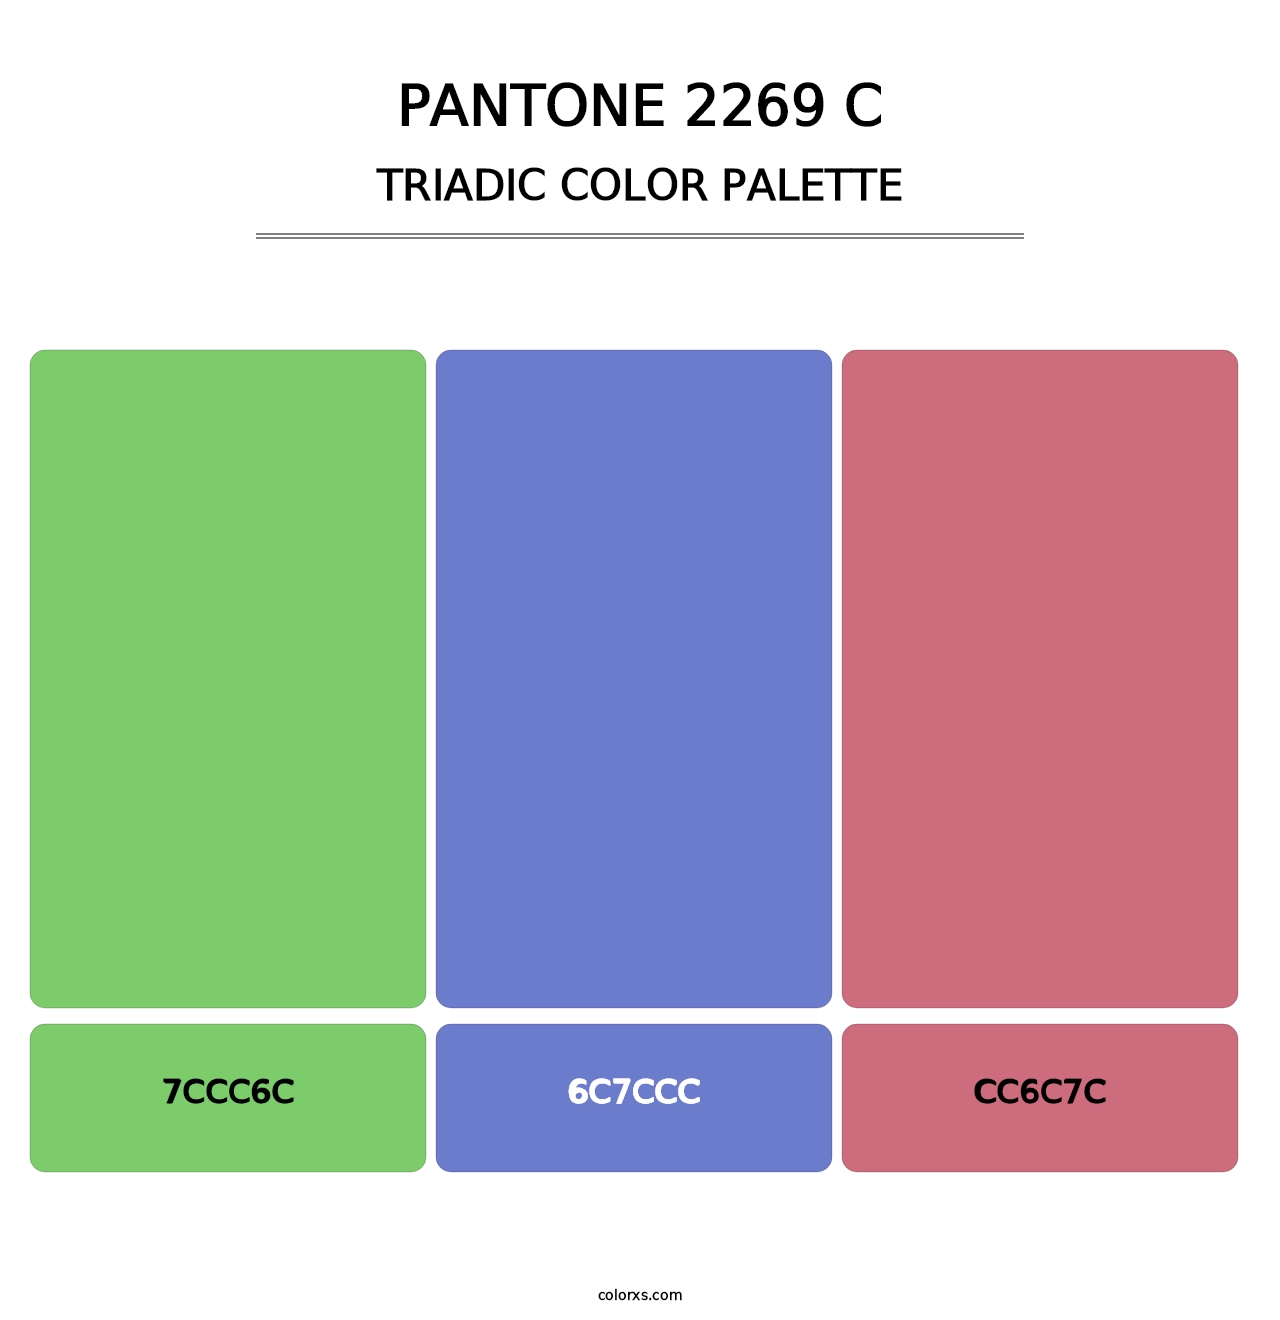 PANTONE 2269 C - Triadic Color Palette